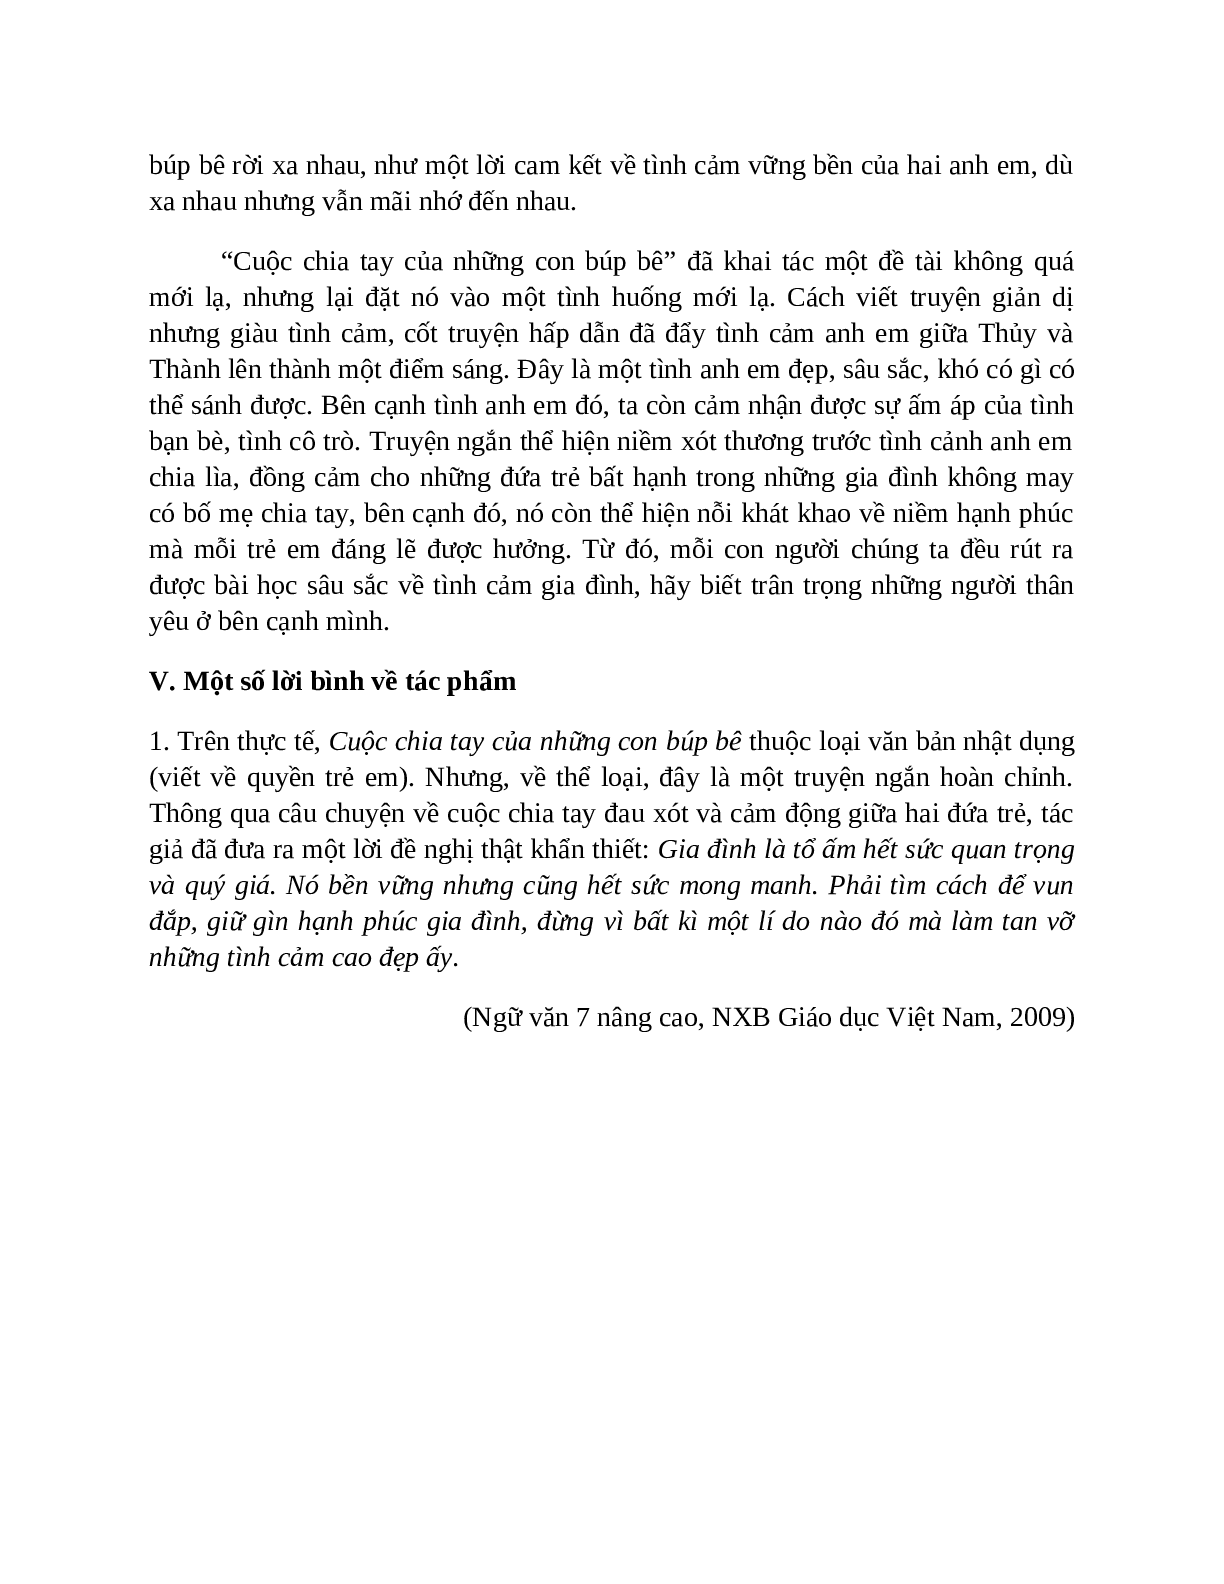 Sơ đồ tư duy bài Cuộc chia tay của những con búp bê dễ nhớ, ngắn nhất - Ngữ văn lớp 7 (trang 7)